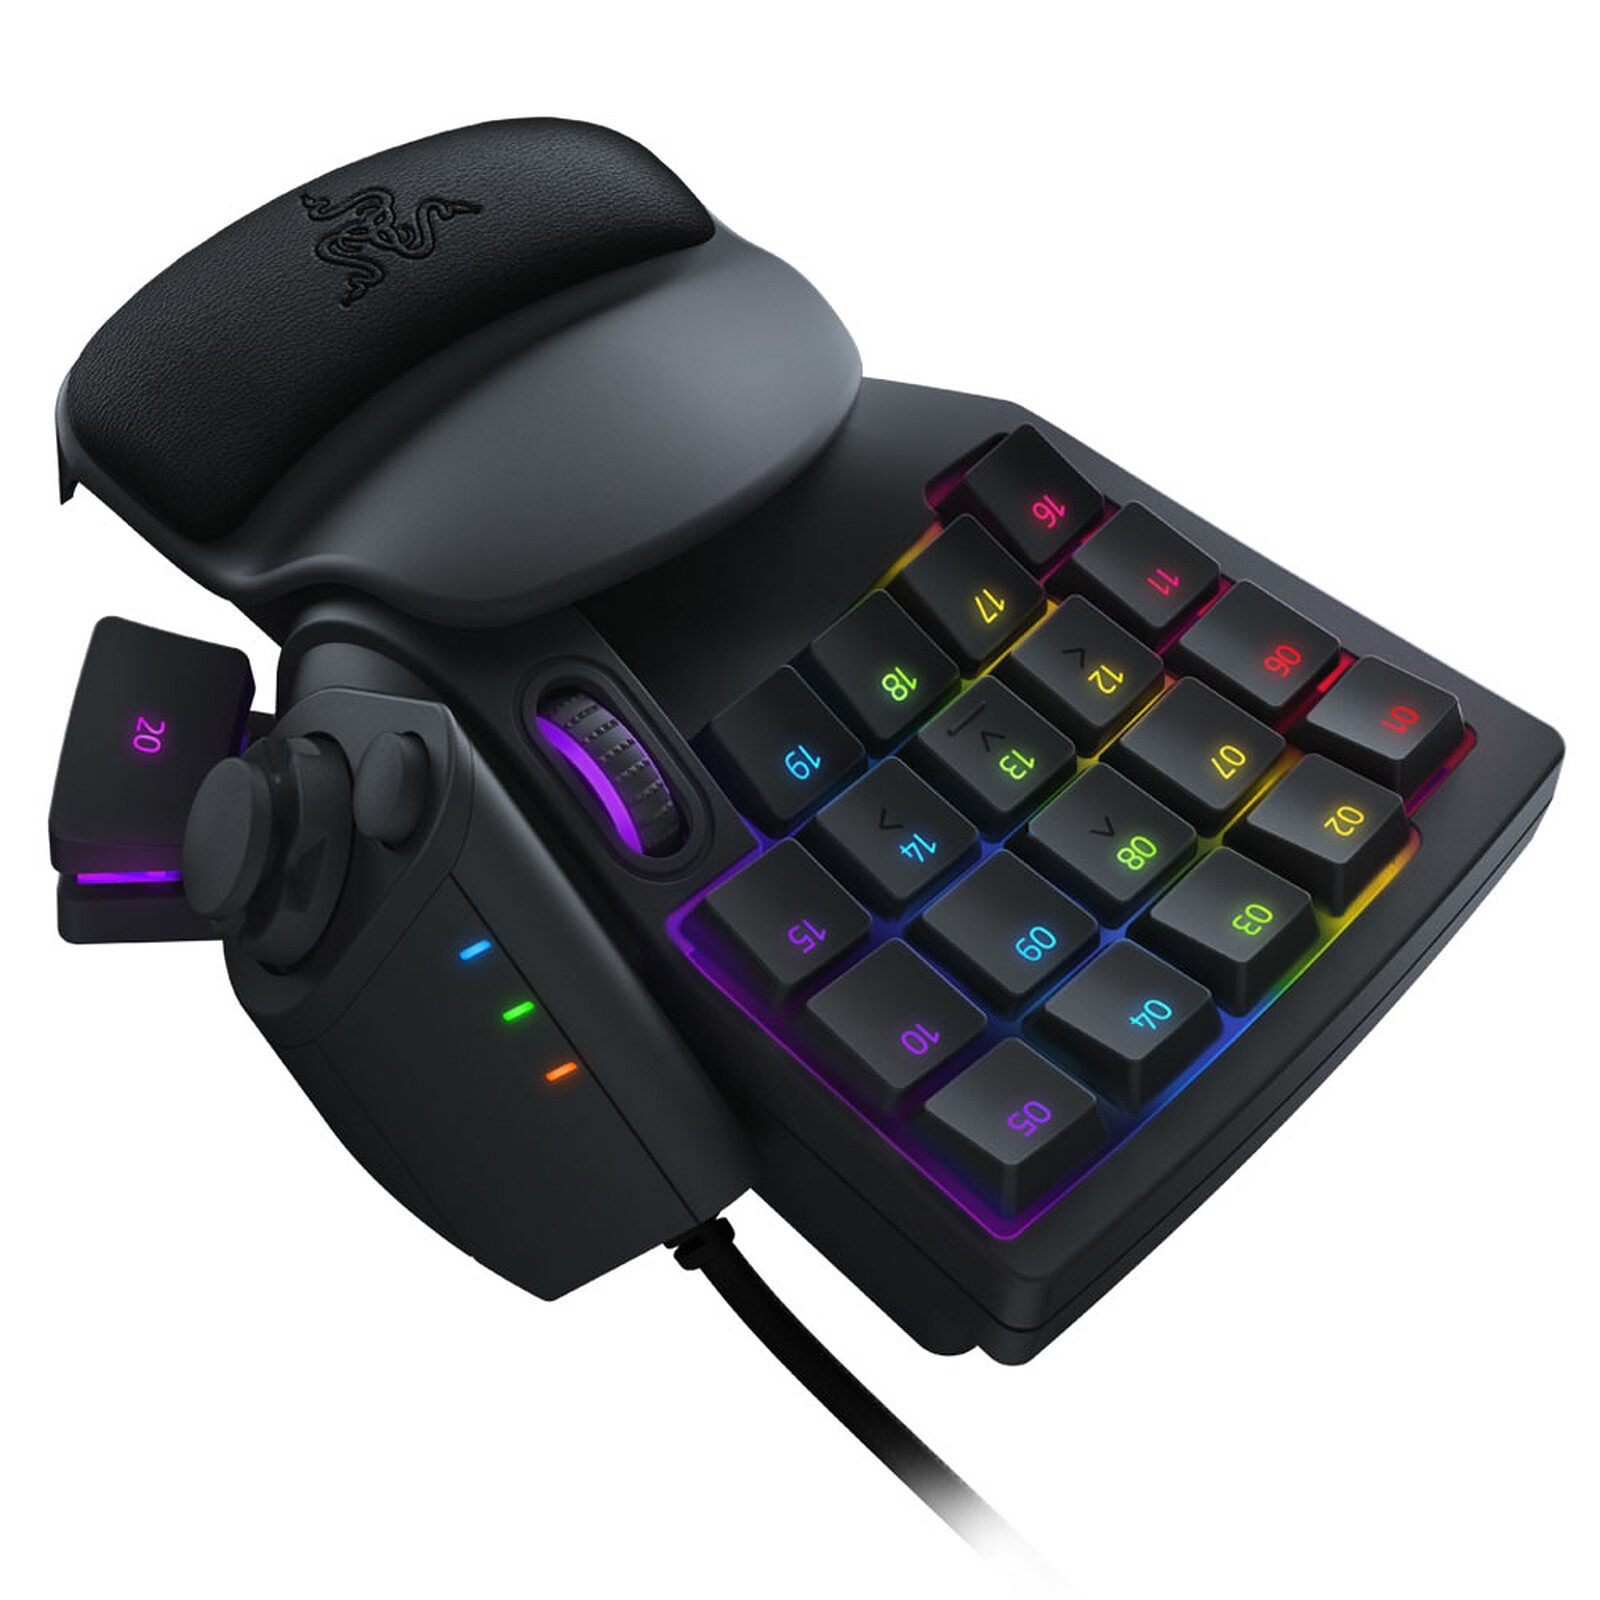 Razer - Que pensez-vous de ce petit clavier custom? 🐍 📸